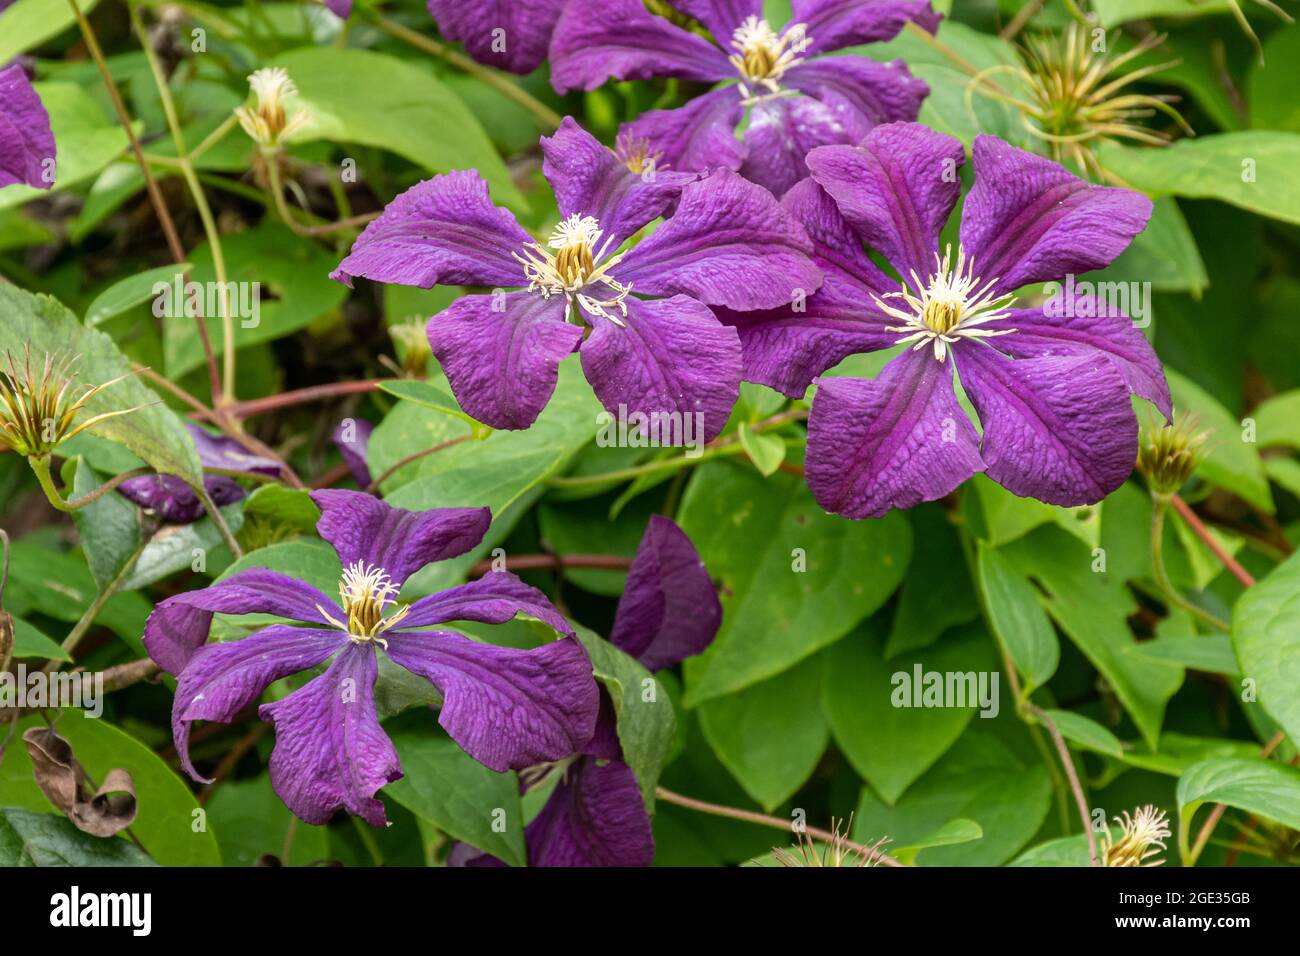 Clematis viticella 'Etoille Violette', une plante d'escalade aux fleurs violettes en été, au Royaume-Uni Banque D'Images